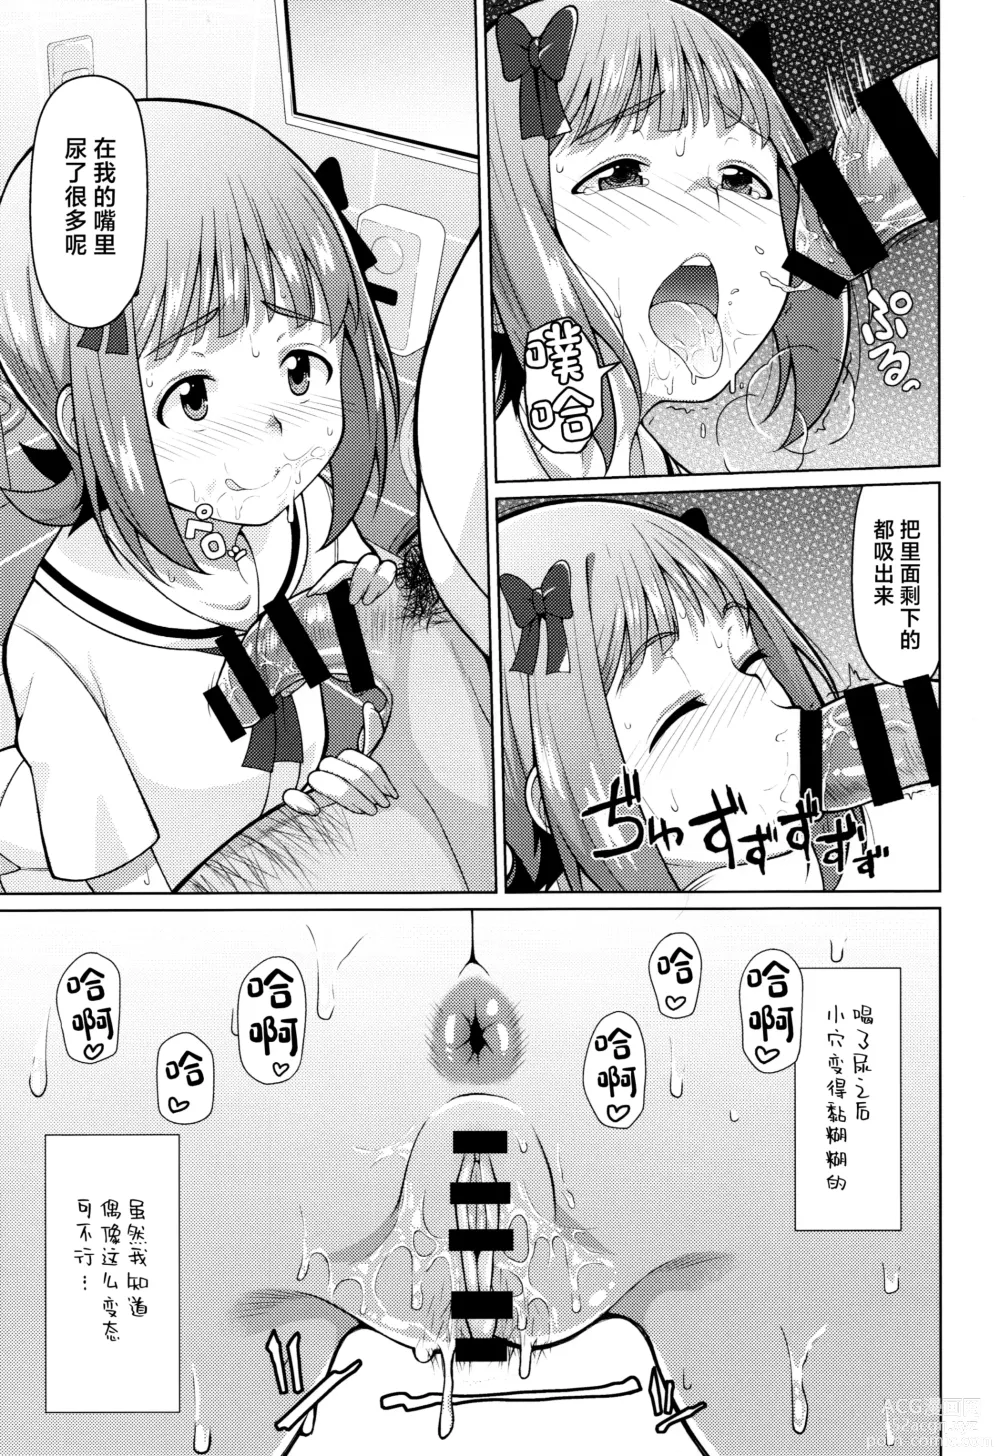 Page 16 of doujinshi Ninki Idol no Renai Jijou ~Amami Haruka no Baai 2~